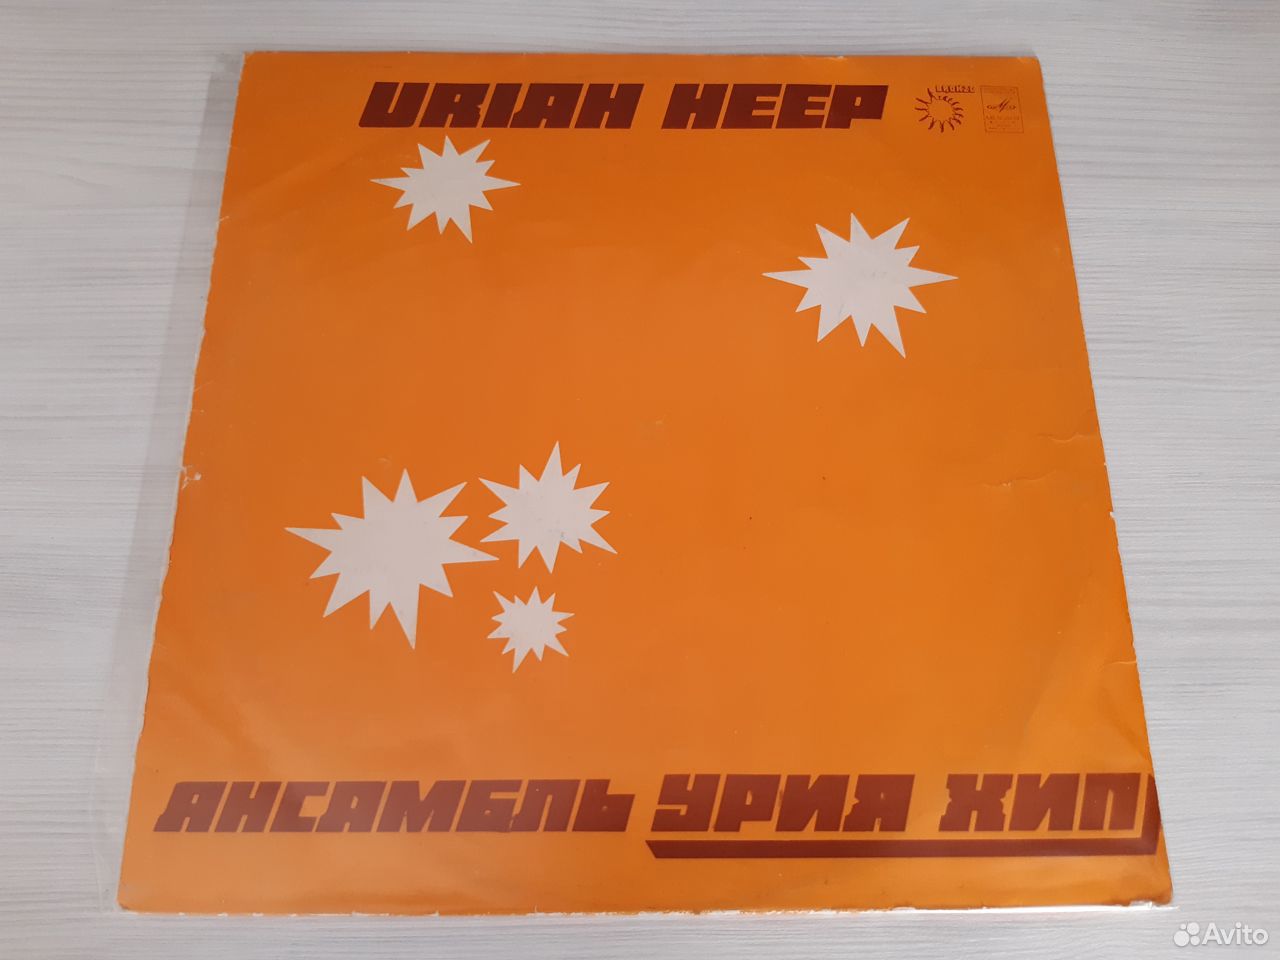 Uriah Heep - Ансамбль «Урия Хип» (1980) 89058588885 купить 1